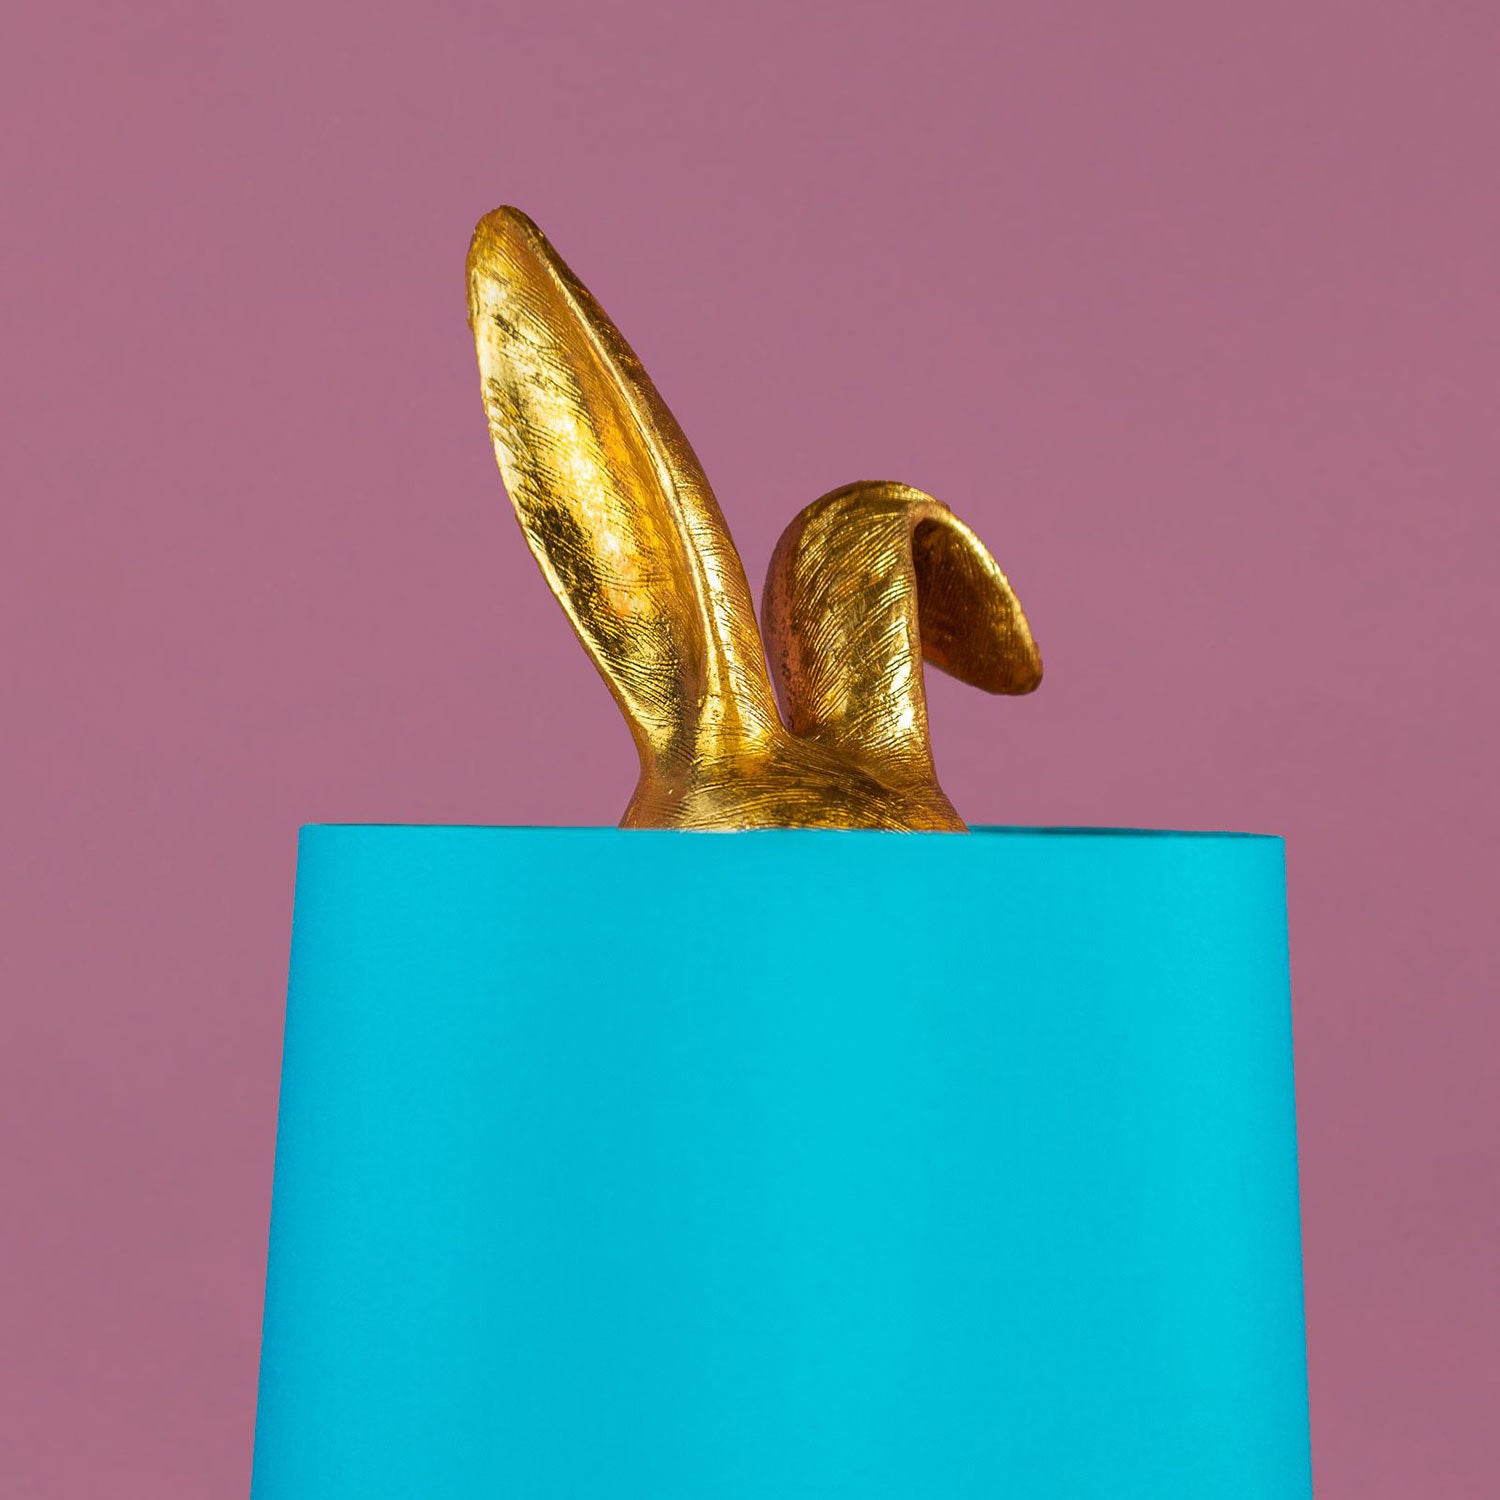 Aranyszínű, rejtőzködő nyuszi figurás, 74 cm magas, kortárs, glamour stílusú, díjnyertes dizájn asztali lámpa, türkizszínű lámpaernyővel, mályva színű fal előtt.